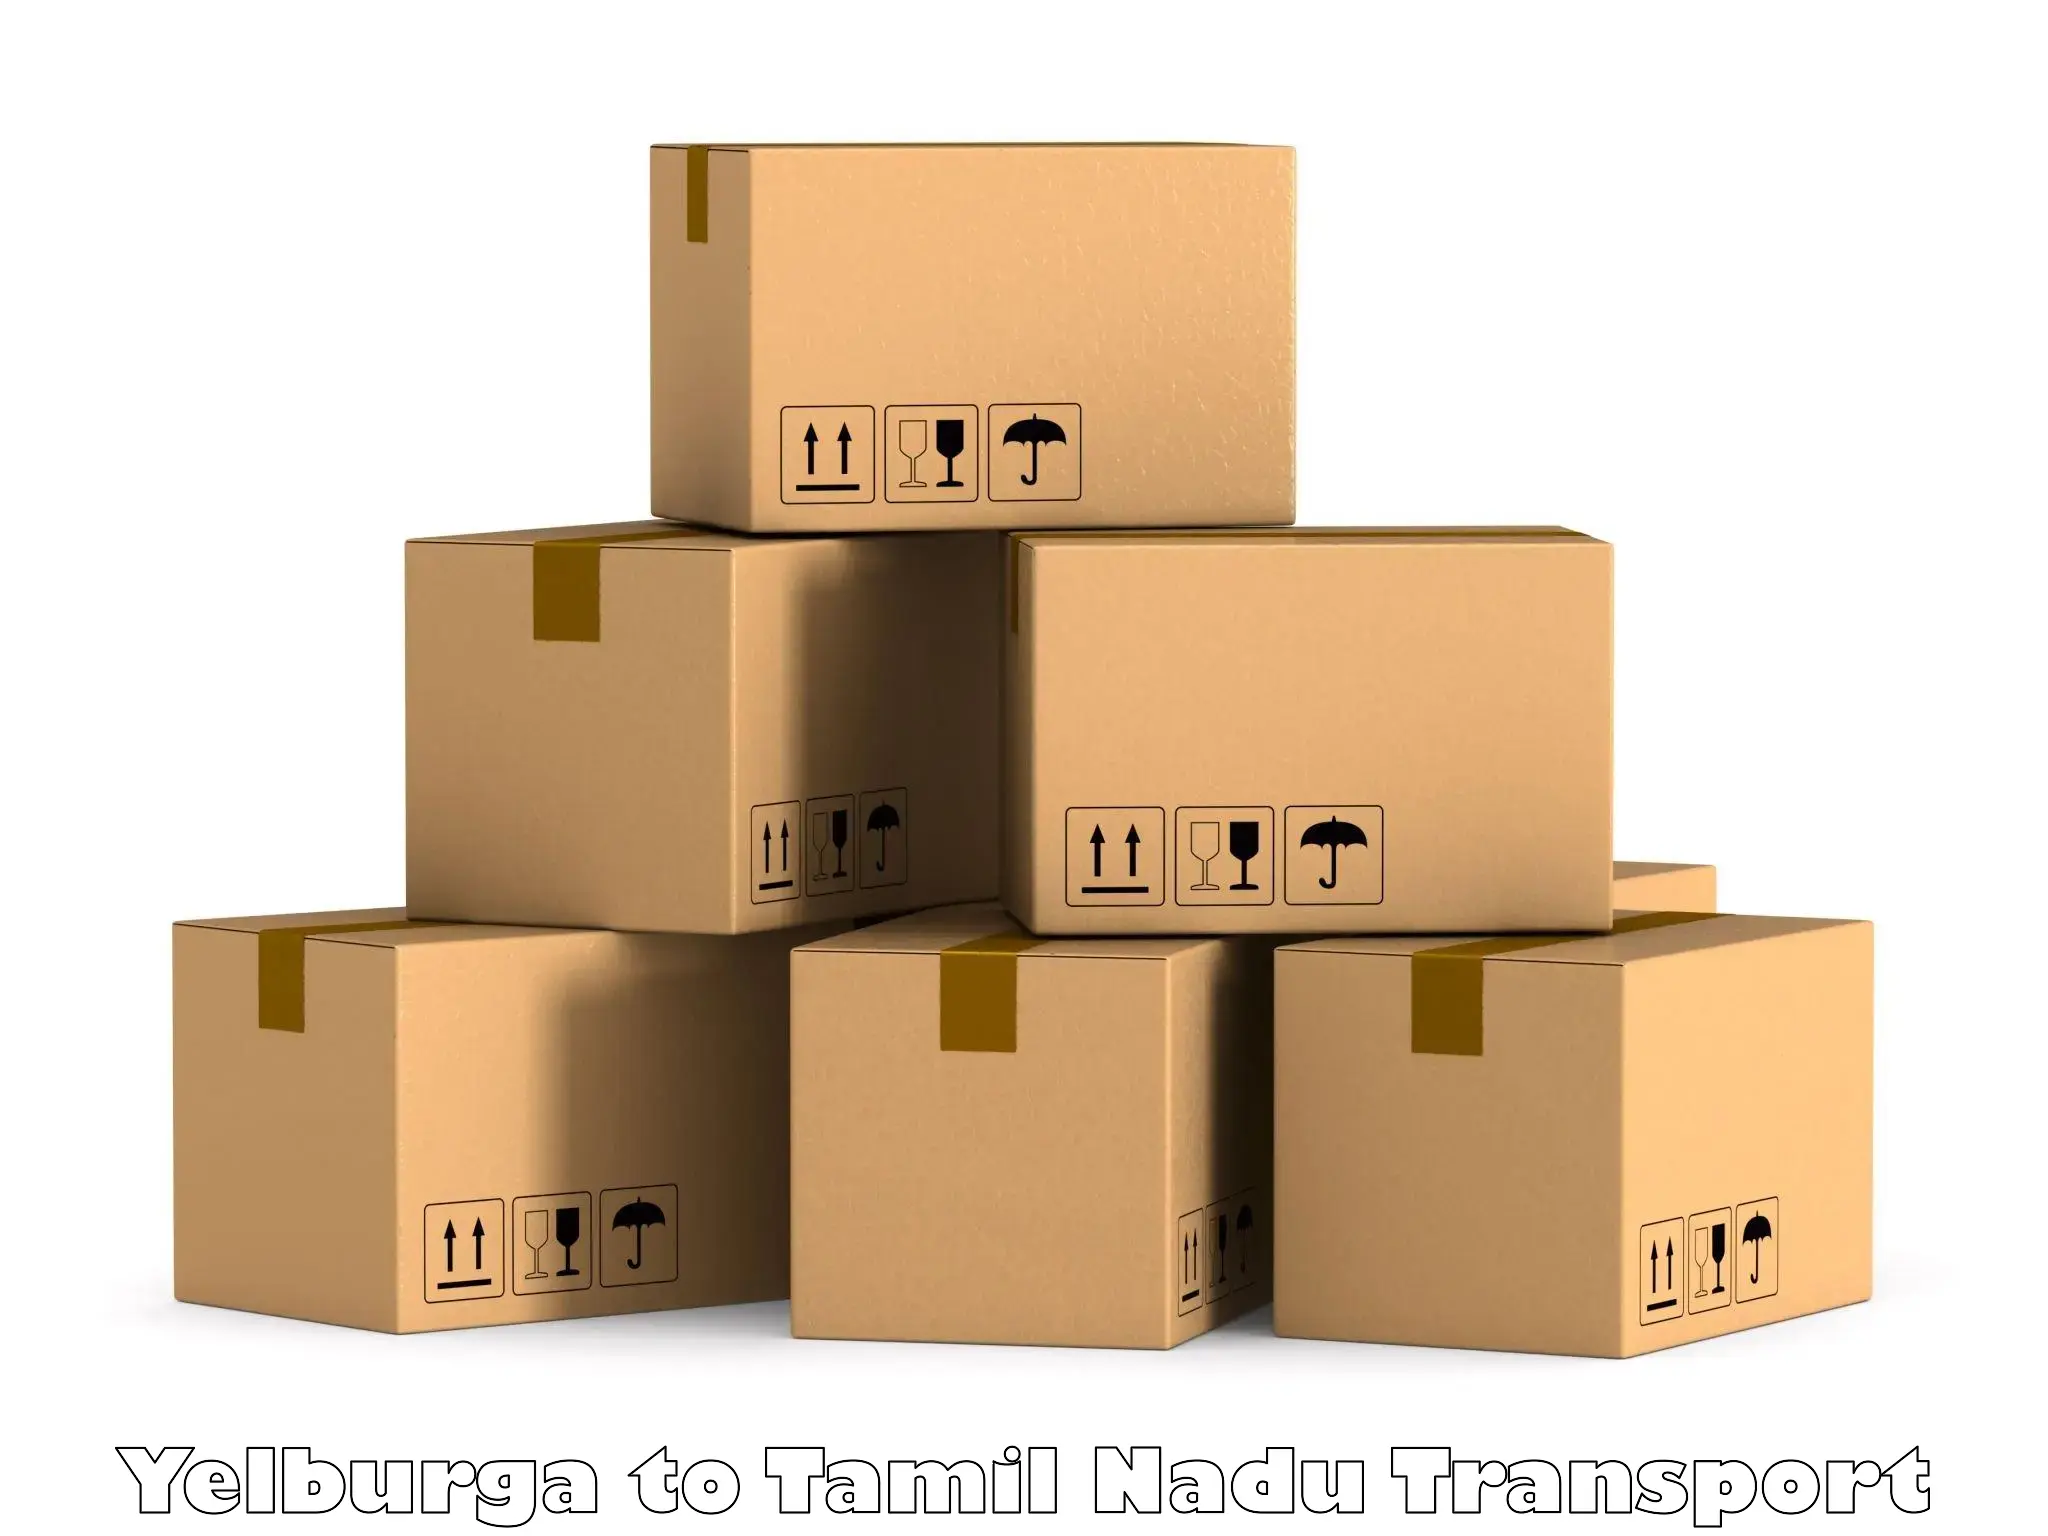 Furniture transport service Yelburga to Rameswaram